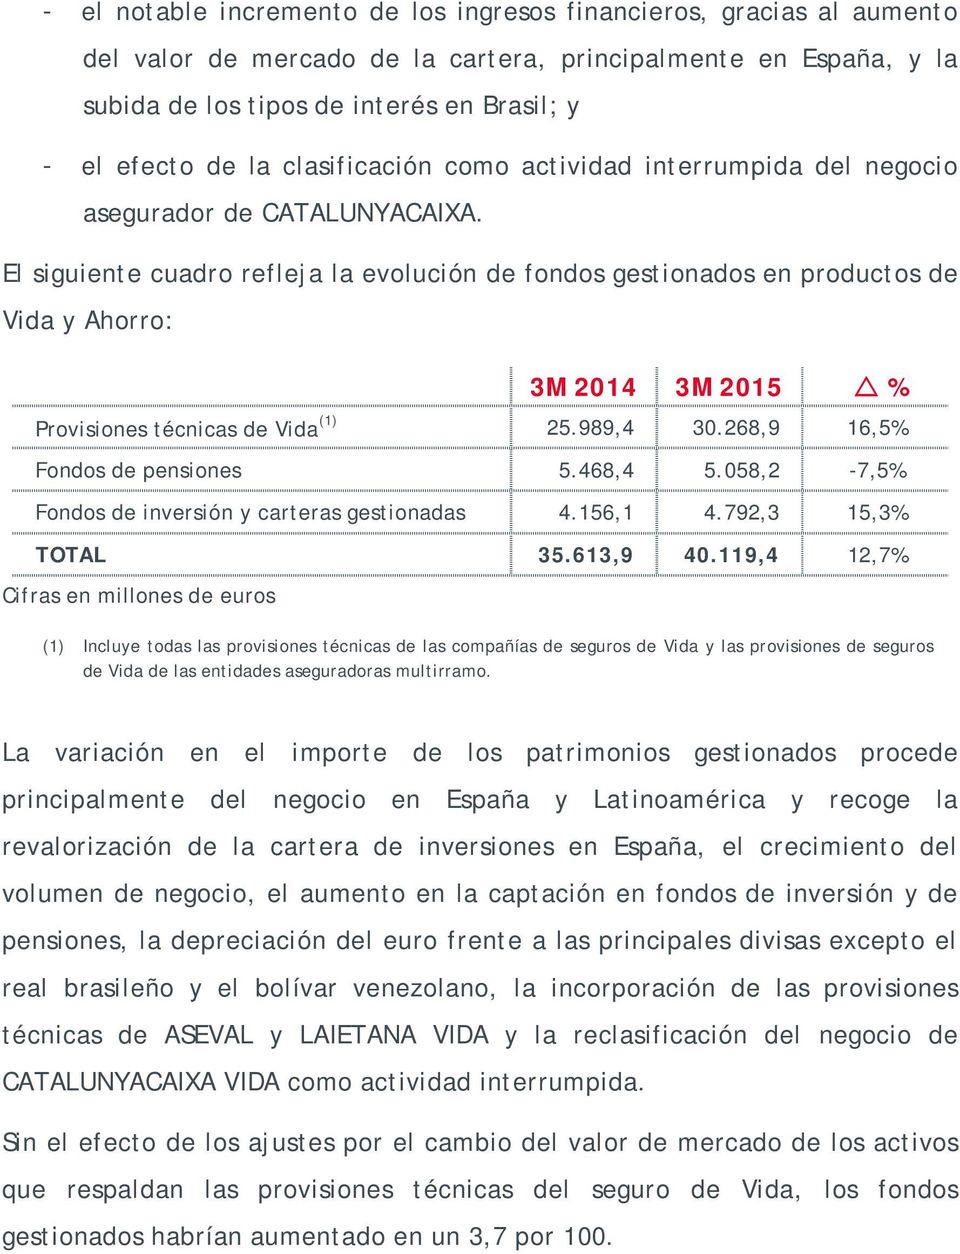 El siguiente cuadro refleja la evolución de fondos gestionados en productos de Vida y Ahorro: 3M 2014 3M 2015 % Provisiones técnicas de Vida (1) 25.989,4 30.268,9 16,5% Fondos de pensiones 5.468,4 5.